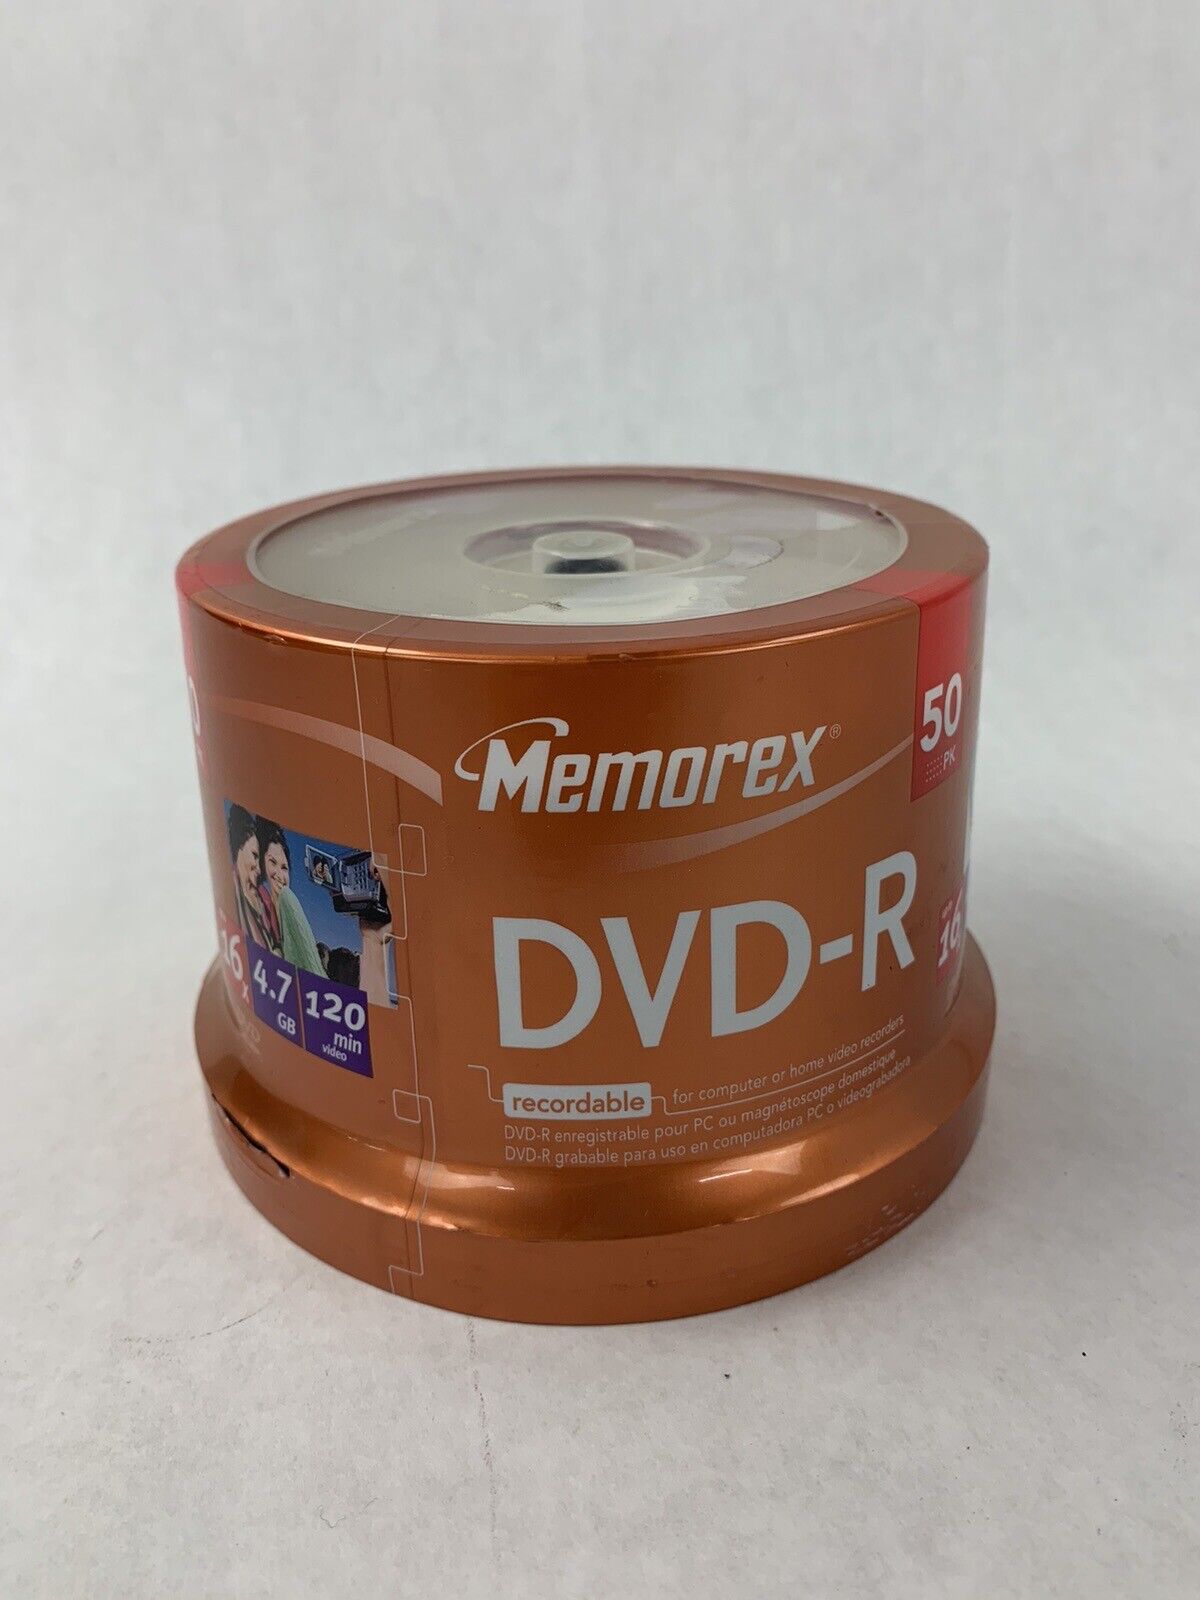 Lot of 3 Memorex DVD-R 50 Pack 16X 4.7GB 120 Min